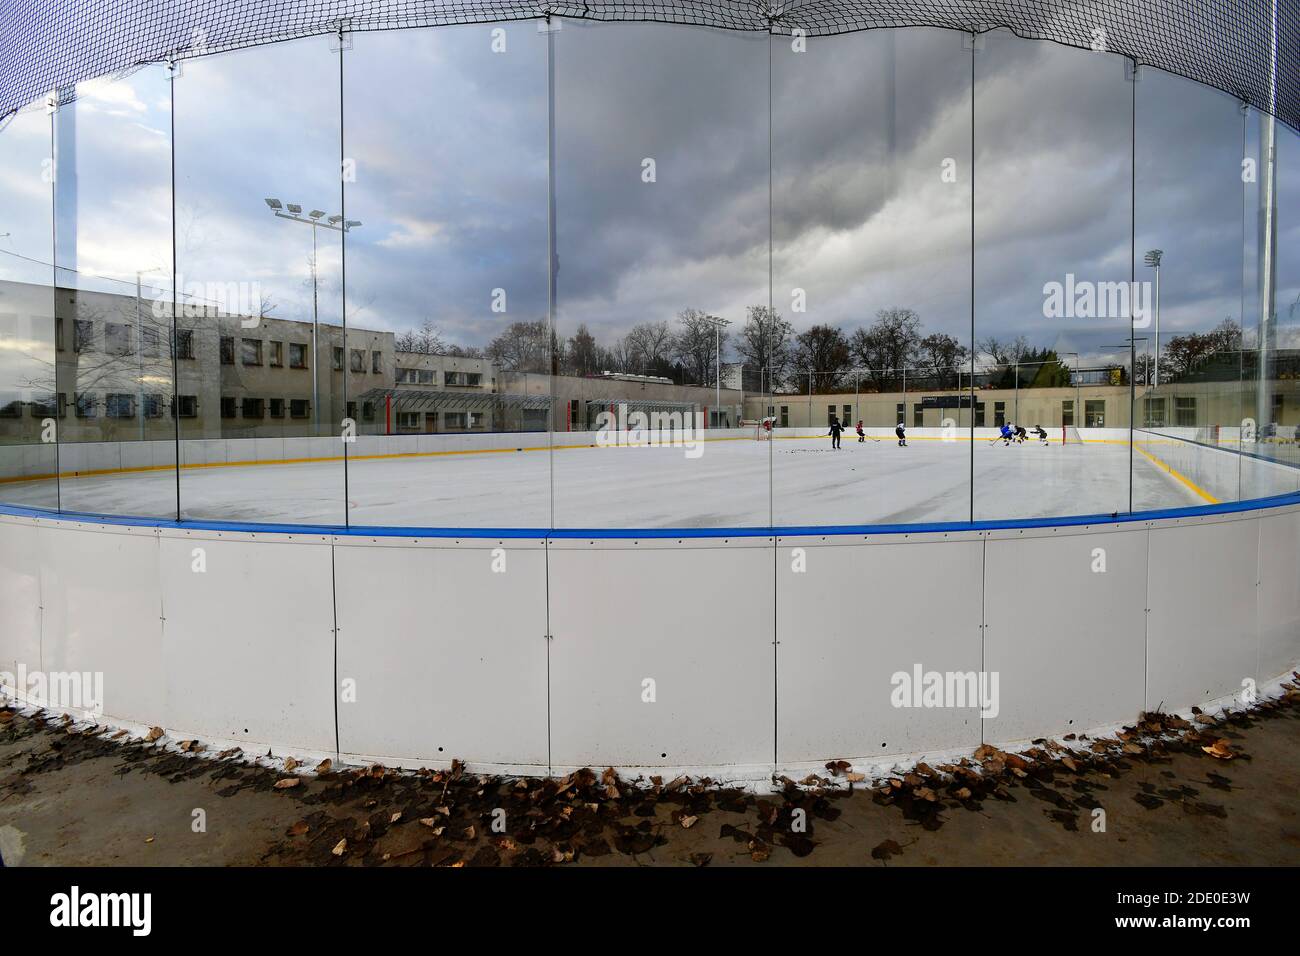 petite patinoire de hockey sur glace en plein air Banque D'Images